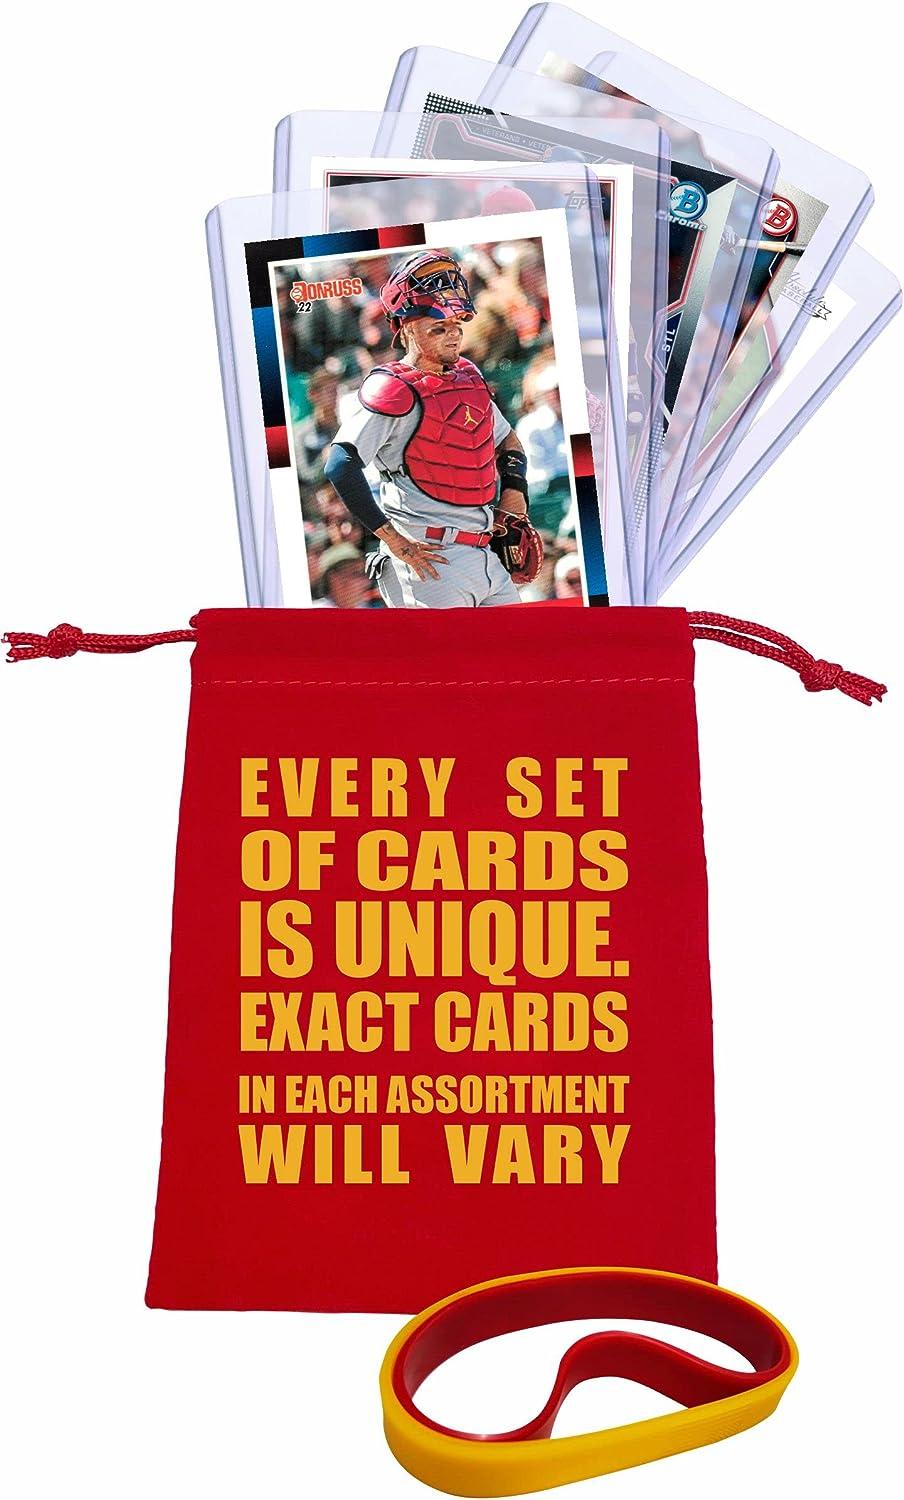 Bowman Yadier Molina Baseball Trading Cards